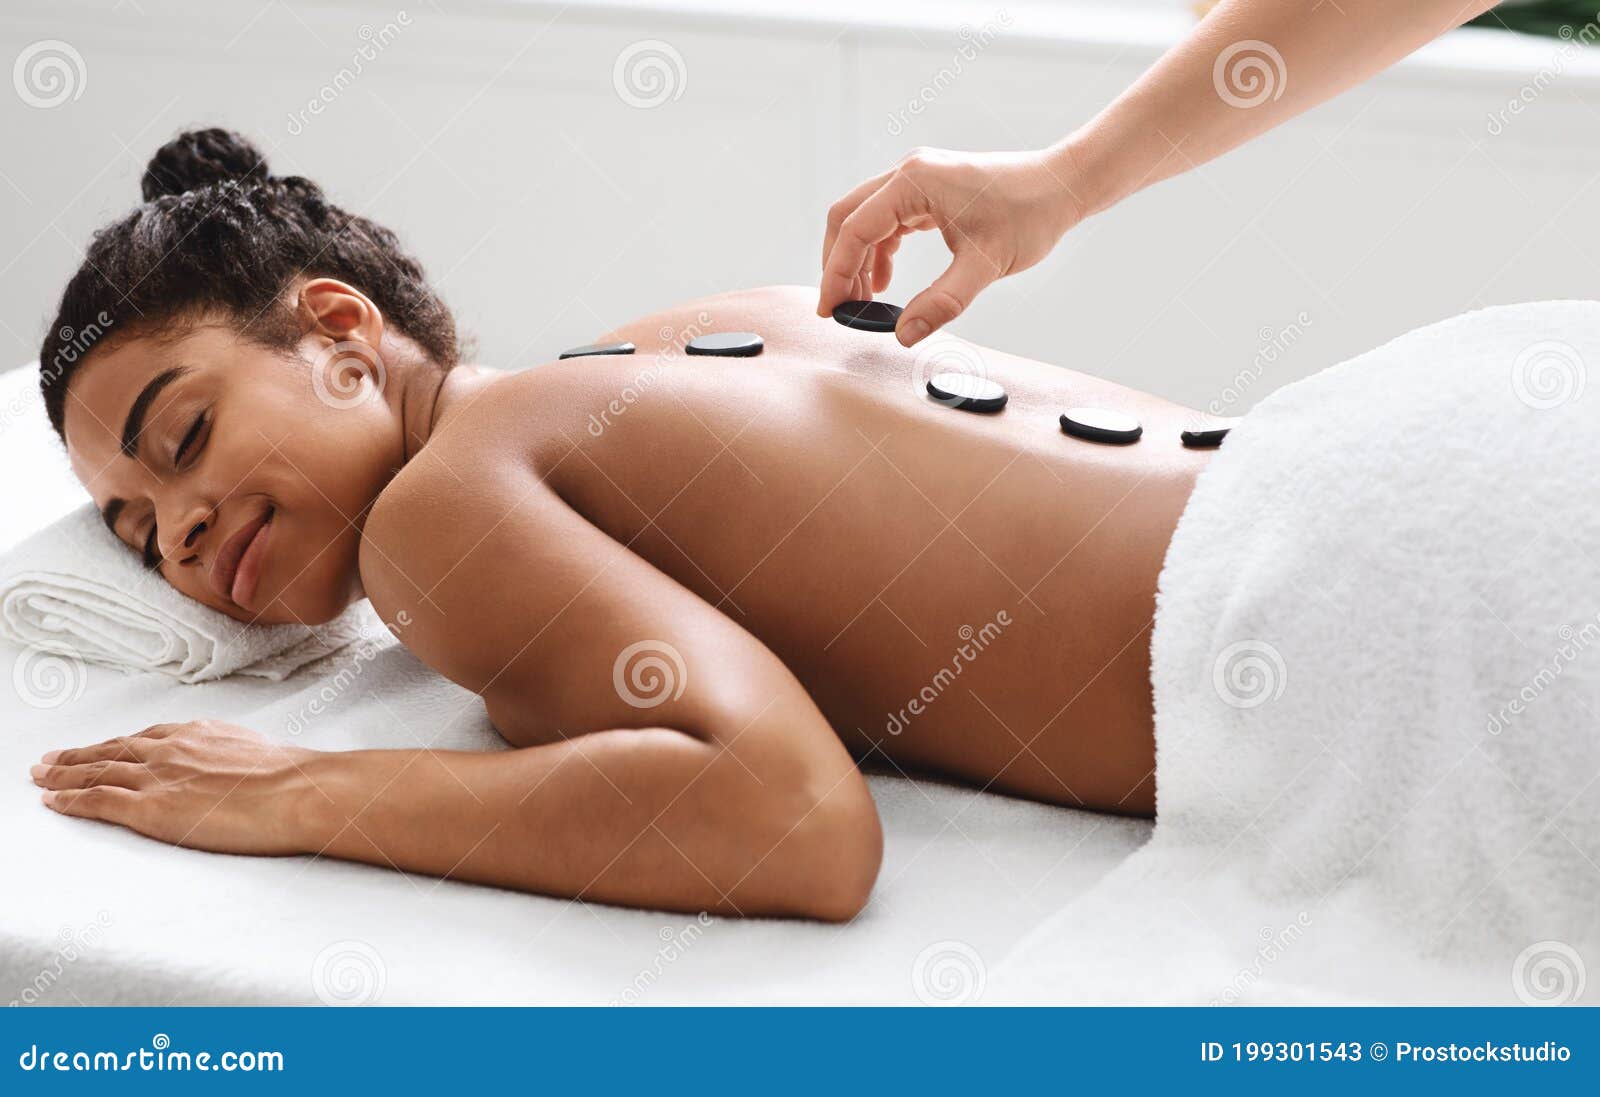 Joyful Zwarte Dame Hete Steen Massage Op Luxe Spa Stock Afbeelding - Image of huid: